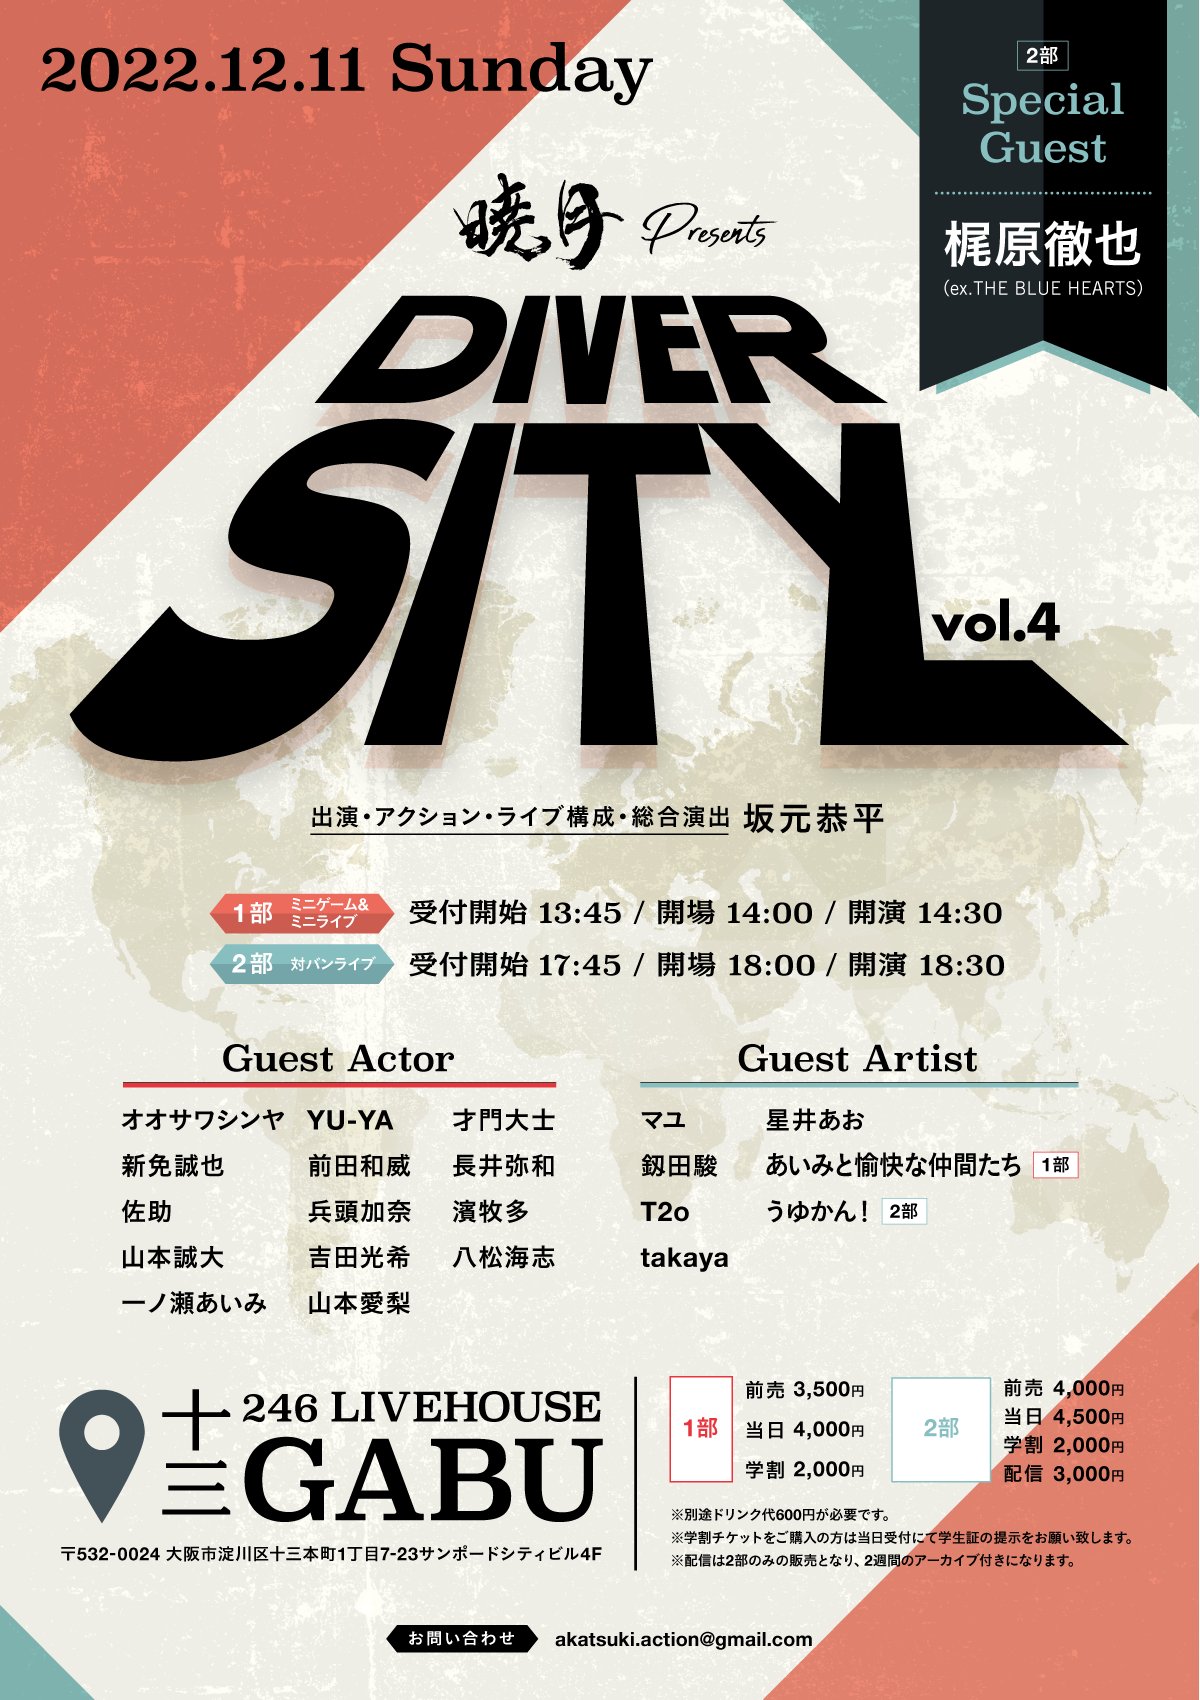 星井あおサポート出演公演『暁月Presents「DIVERSITY vol.4」』